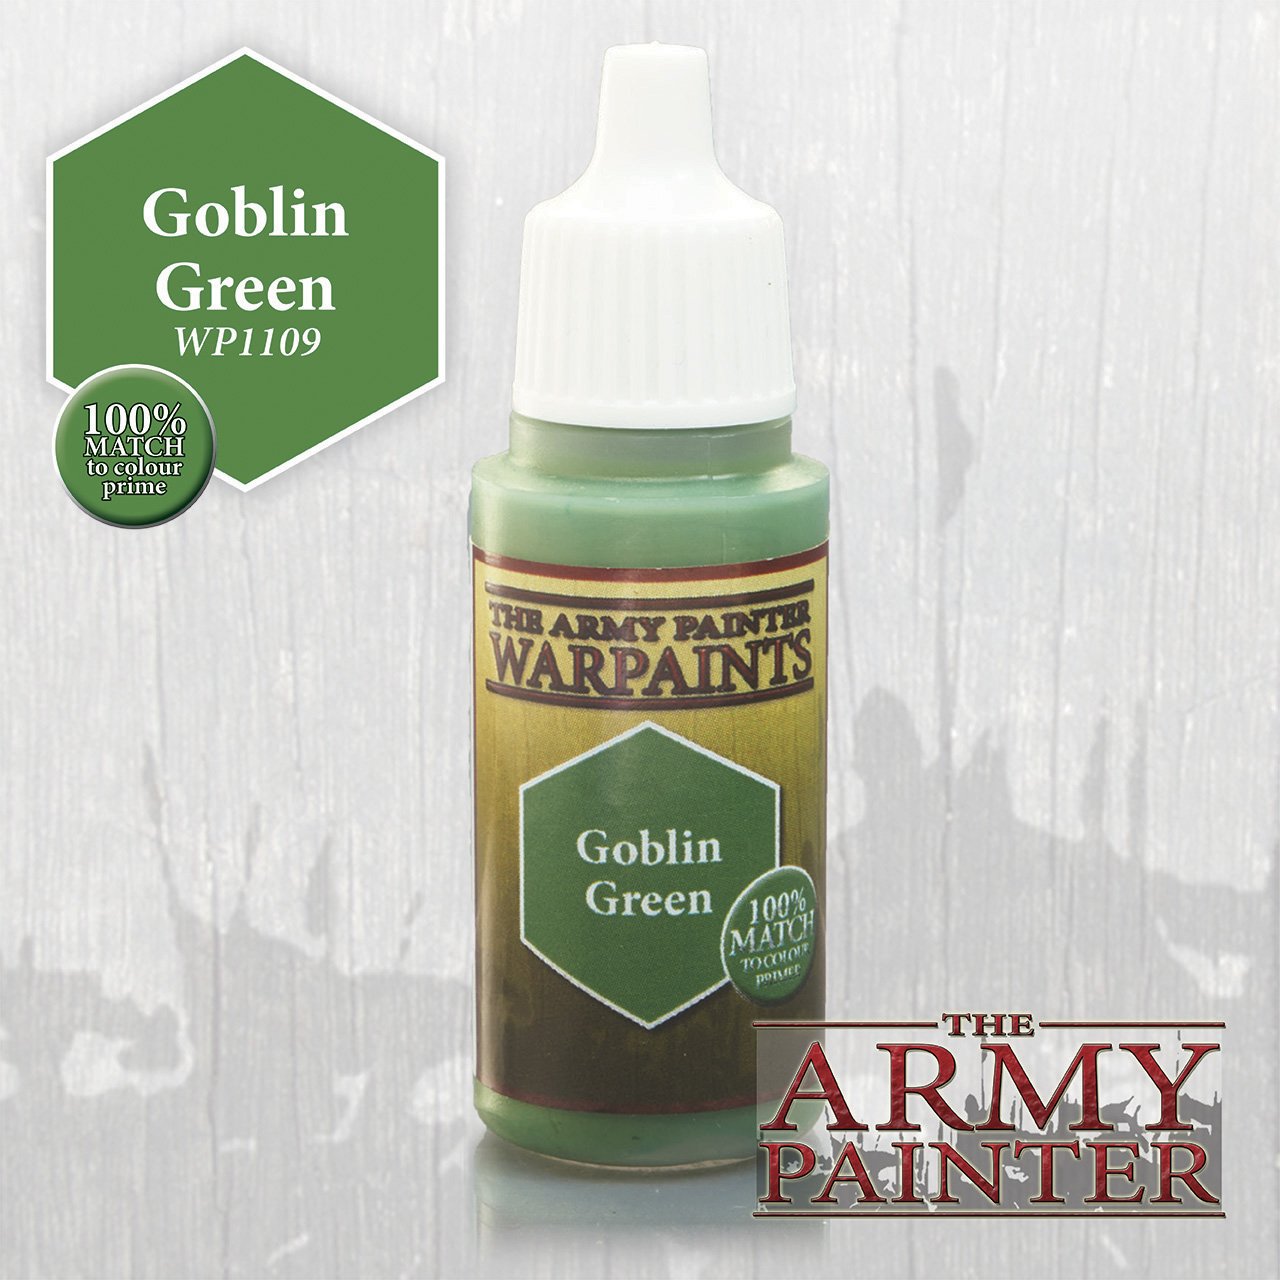 Goblin Green - Linebreakers